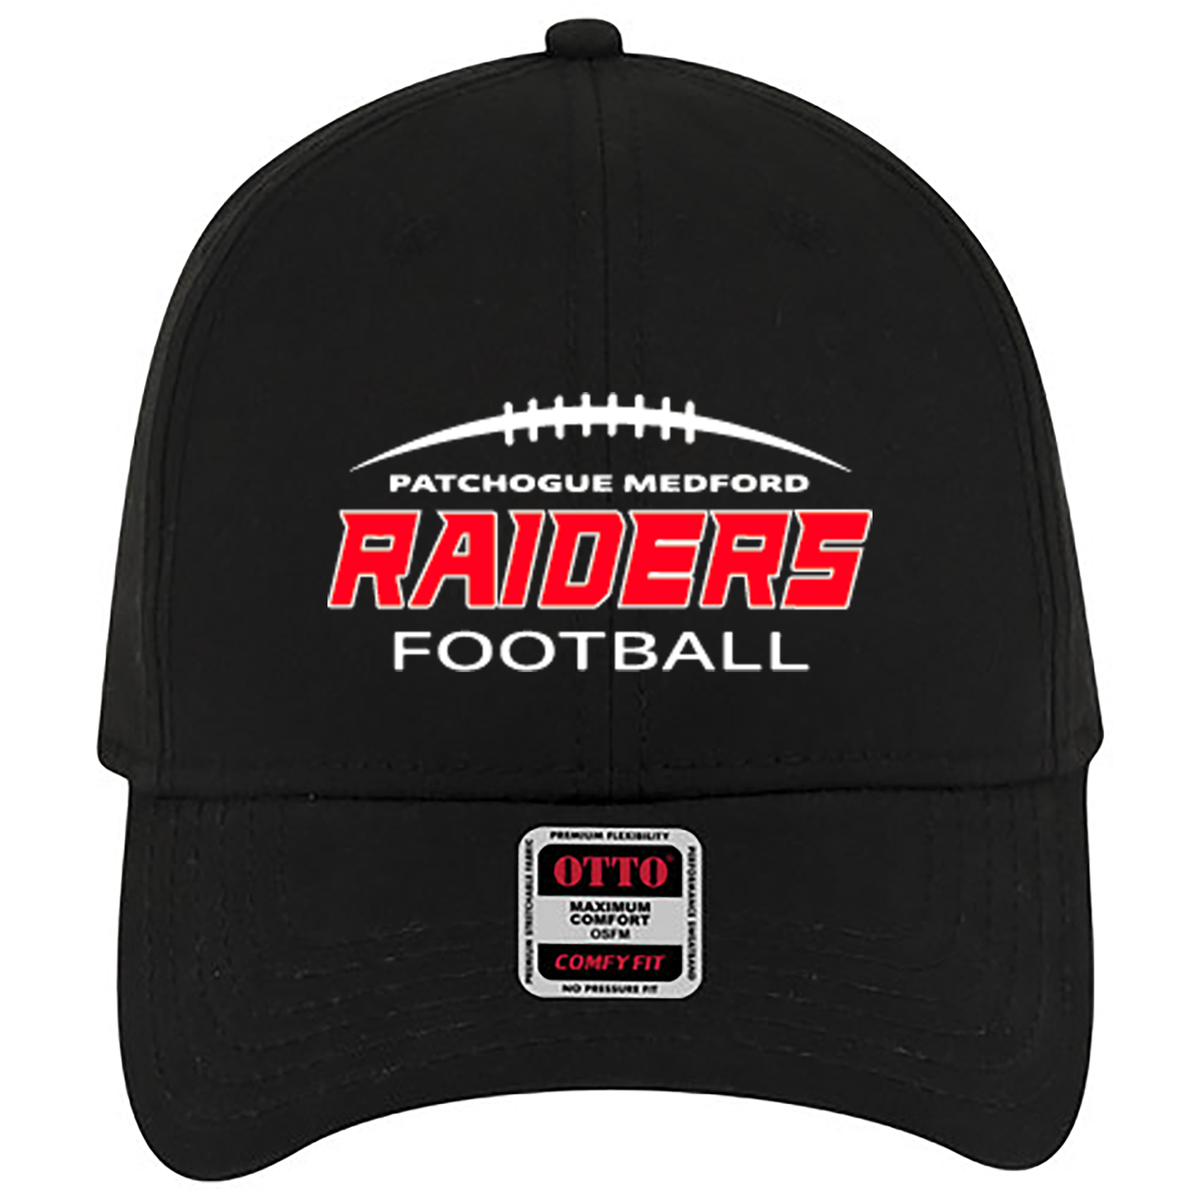 Pat Med Raiders Football Comfy Fit Cap